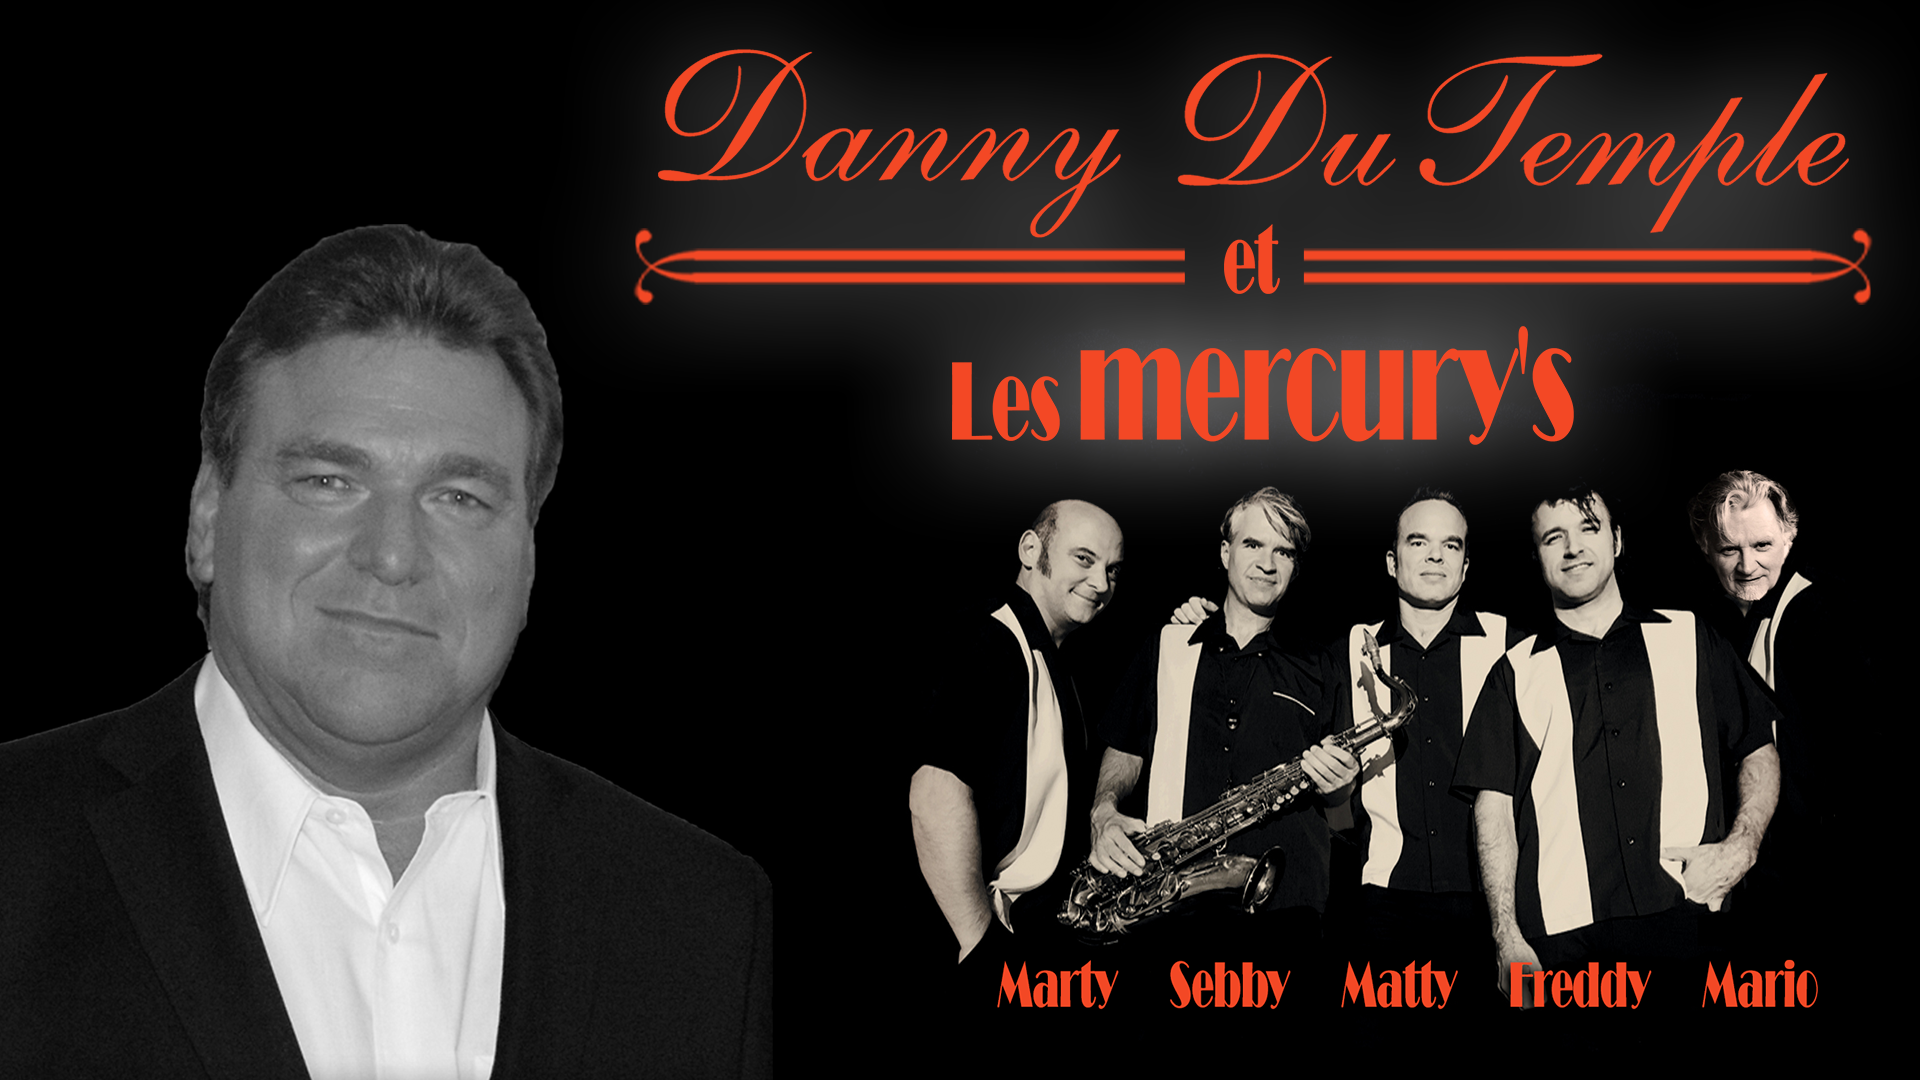 Danny Du Temple et Les mercury's